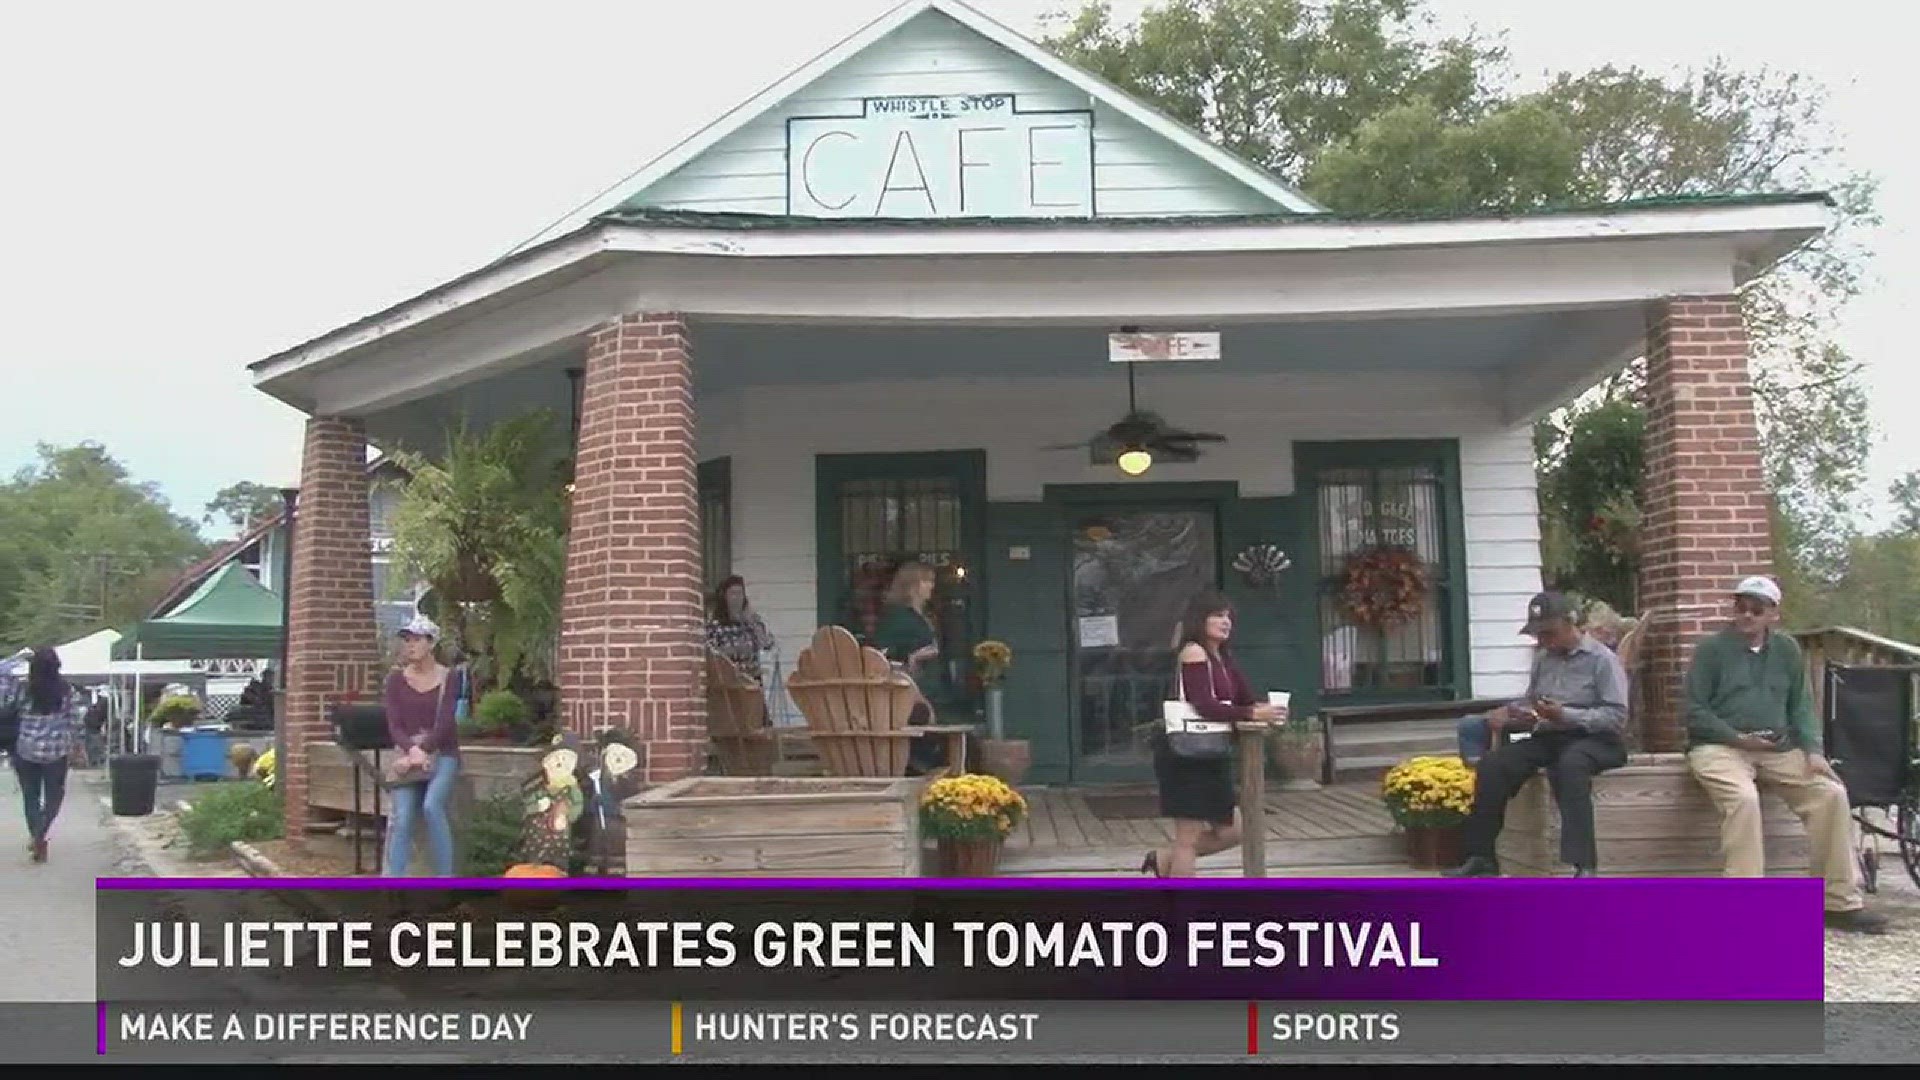 Juliette celebrates Green Tomato Festival